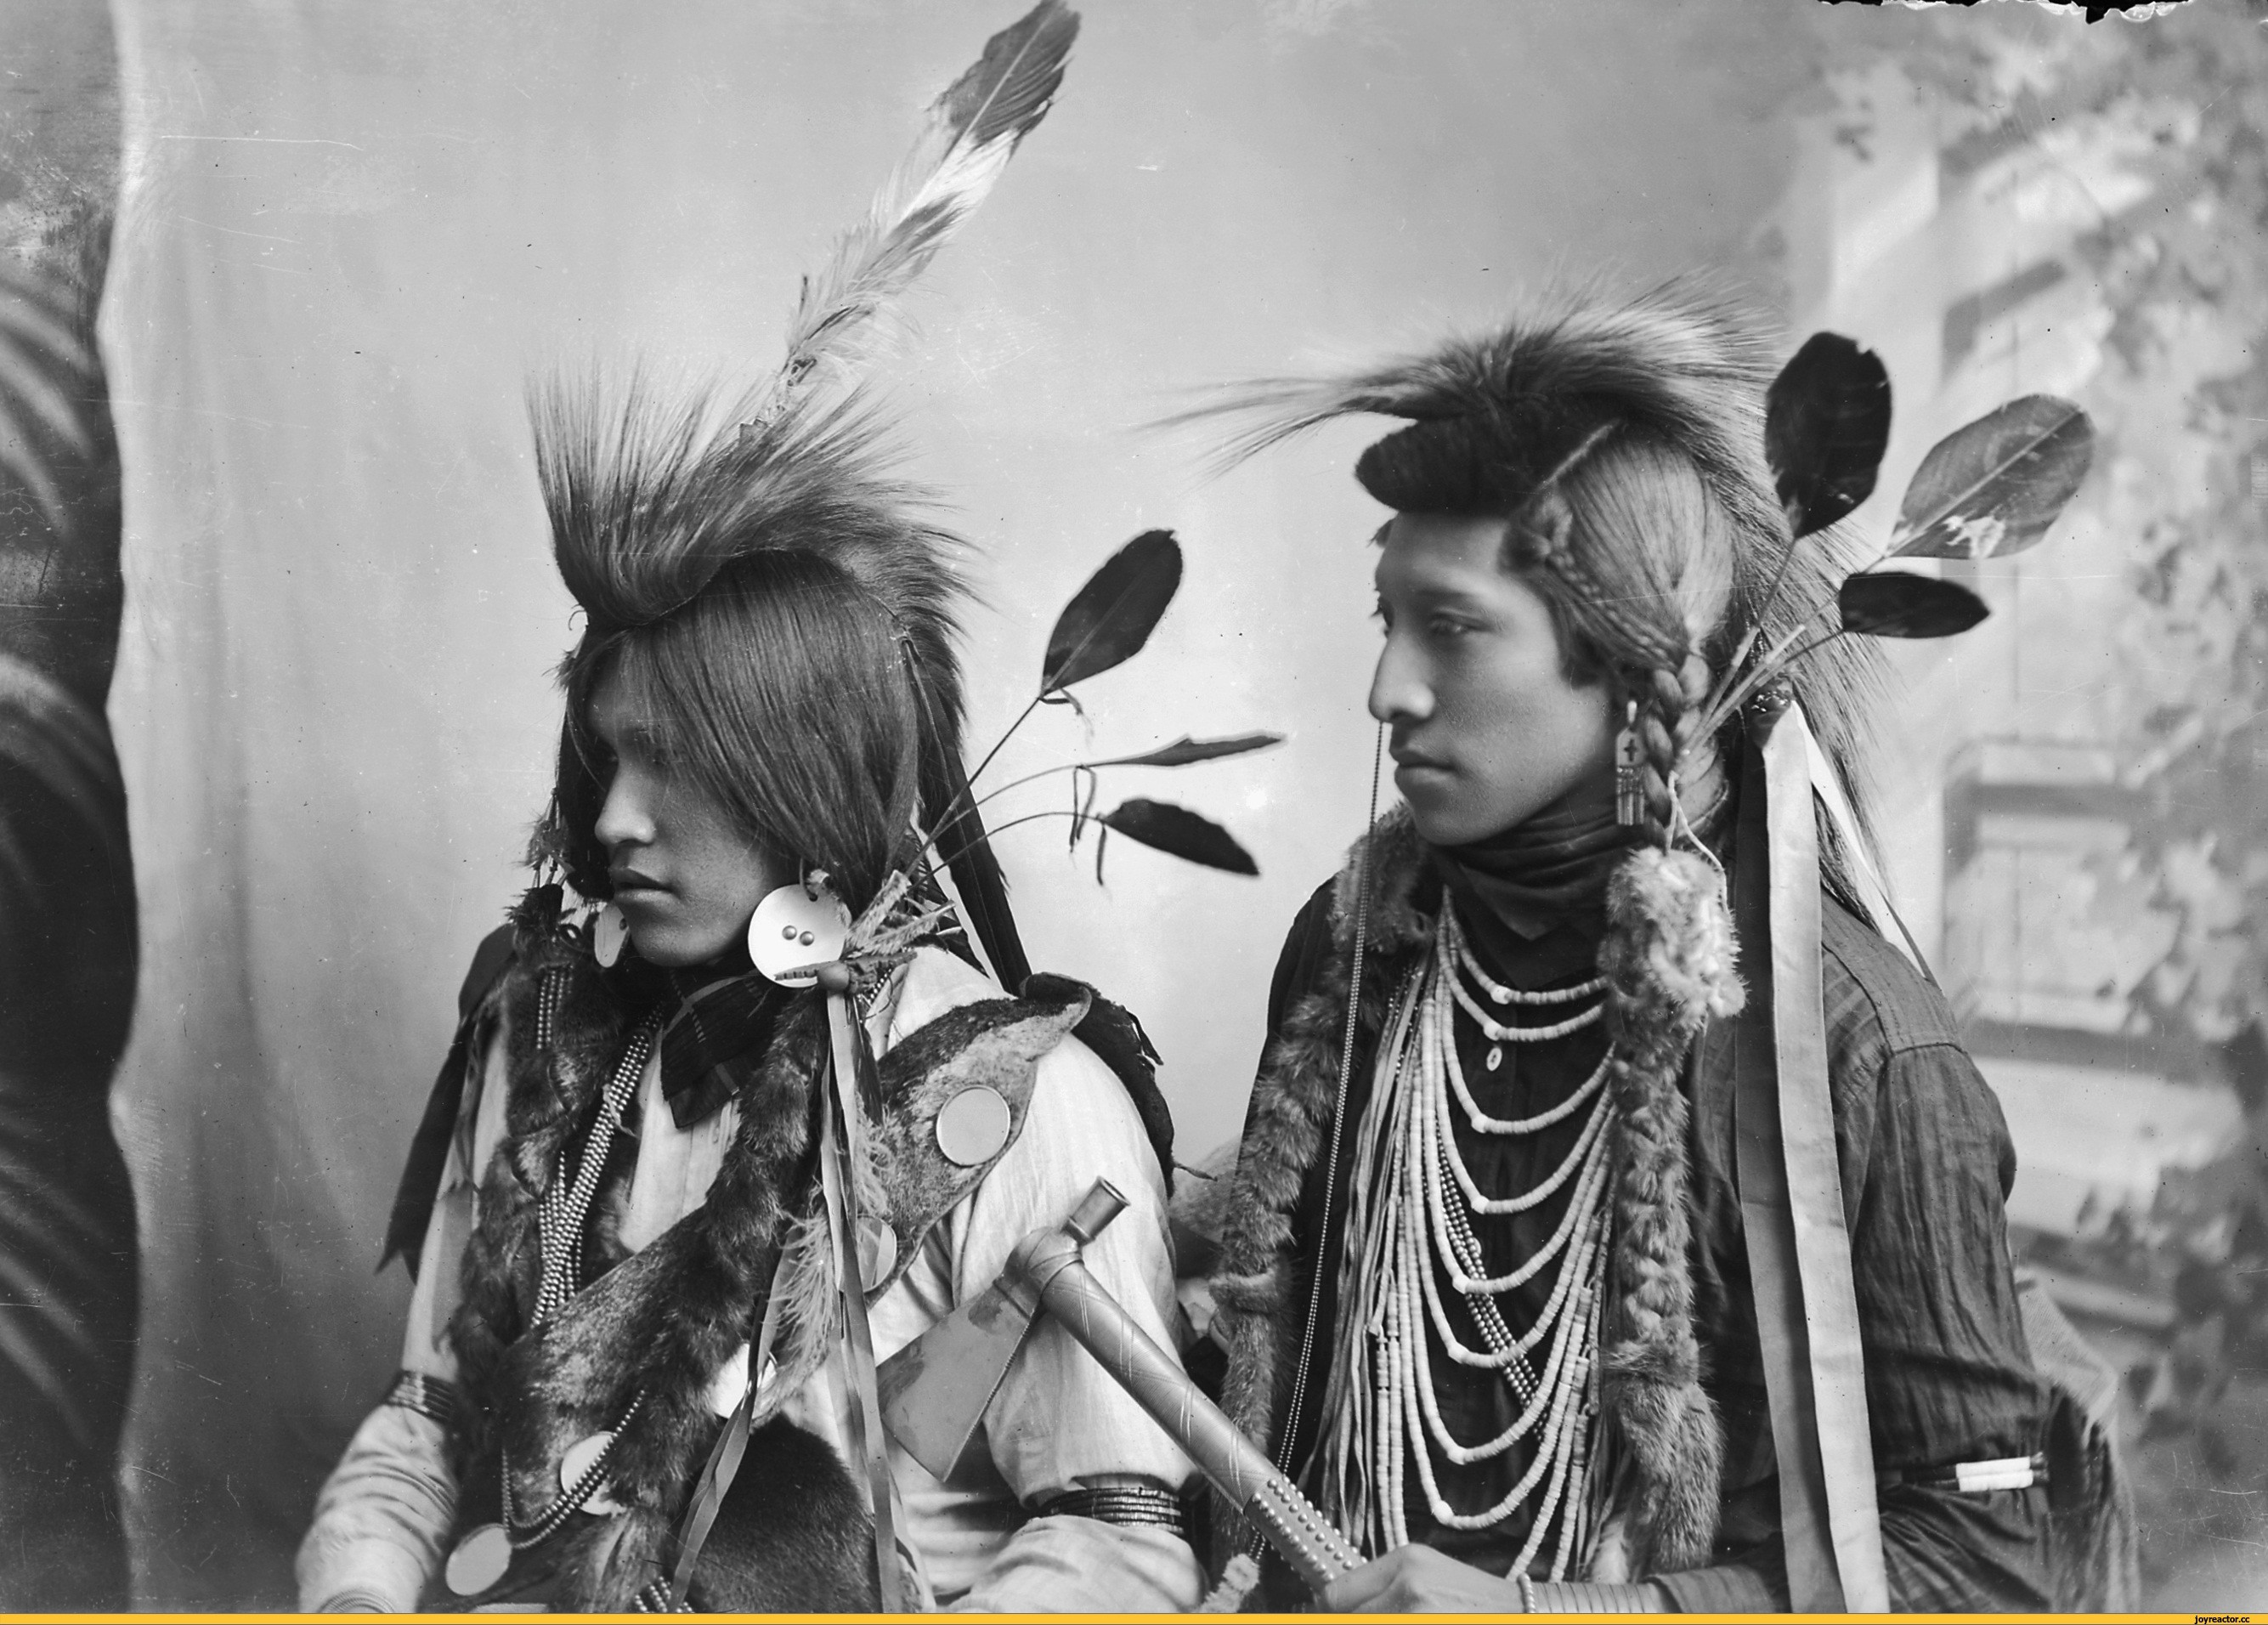 White tribe. Апачи индейцы. Индейцы племени Апачи. Индейцы Северной Америки племена Апачи. Индейцы Апачи вожди.